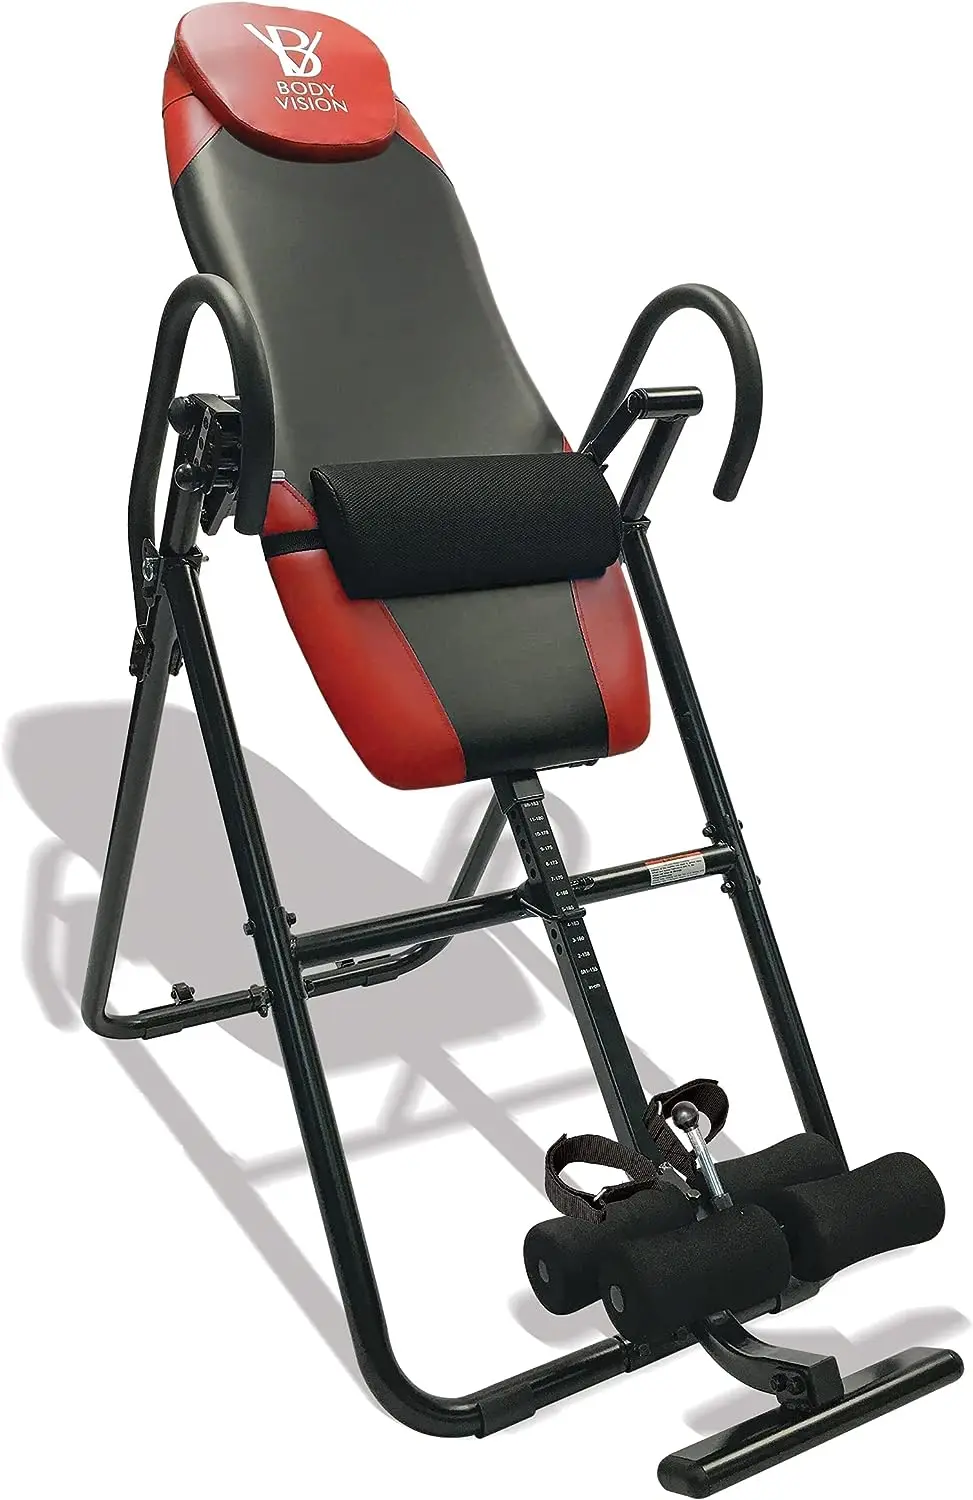 

Премиум Инверсионный стол со съемной подушкой и подушечкой для поддержки поясницы, повышенной прочности, до 250 фунтов, красный